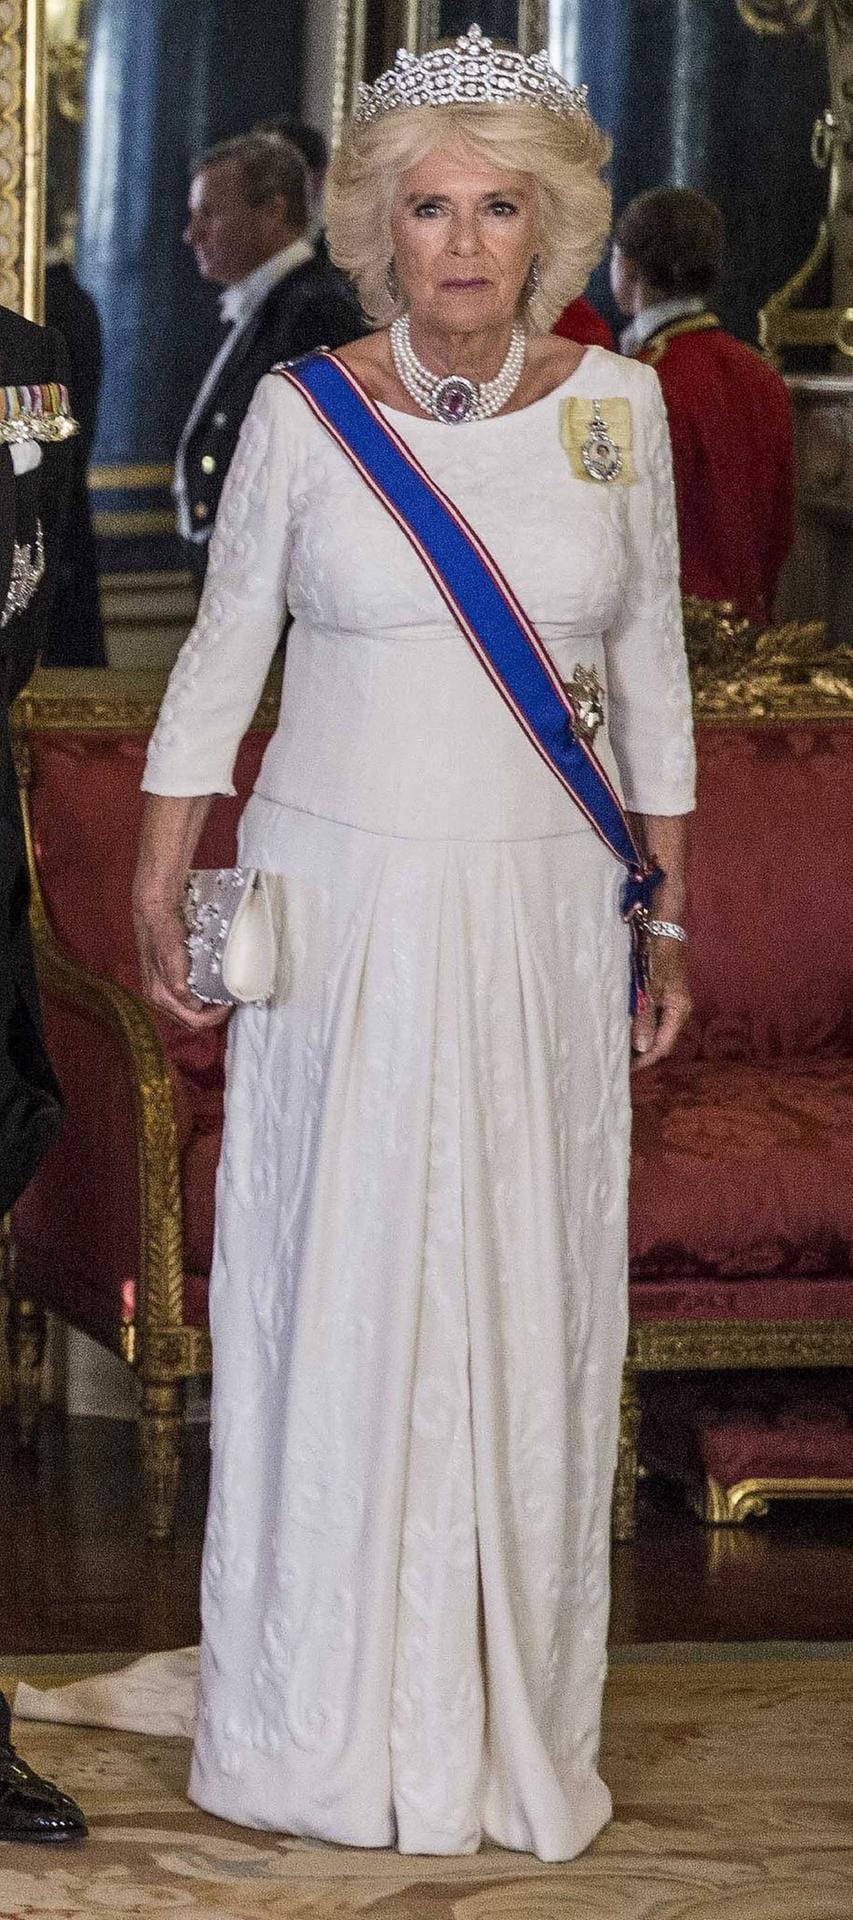 Herzogin Camilla: Die 71-Jährige glänzt beim Staatsbankett in einem weißen langen Kleid und trägt ein auffälliges Diadem.